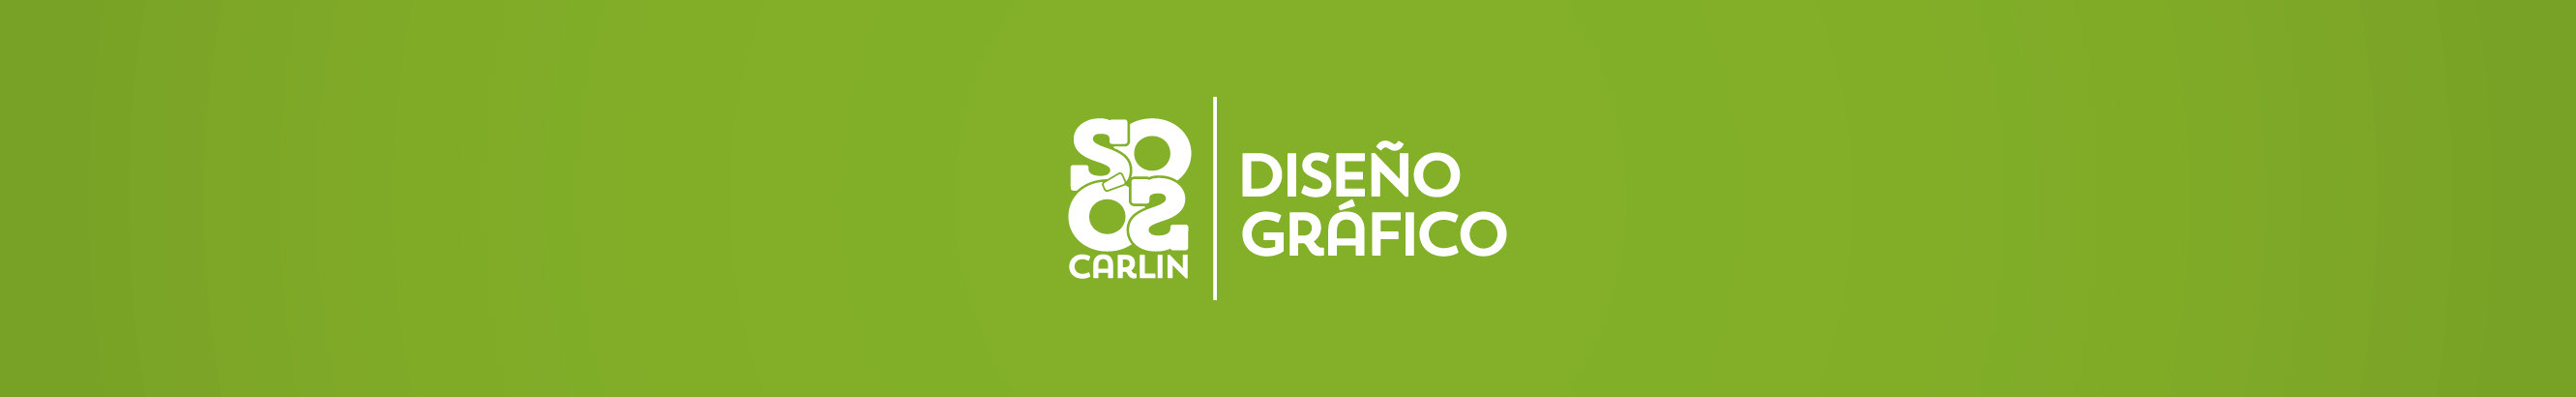 Sosó Carlin's profile banner